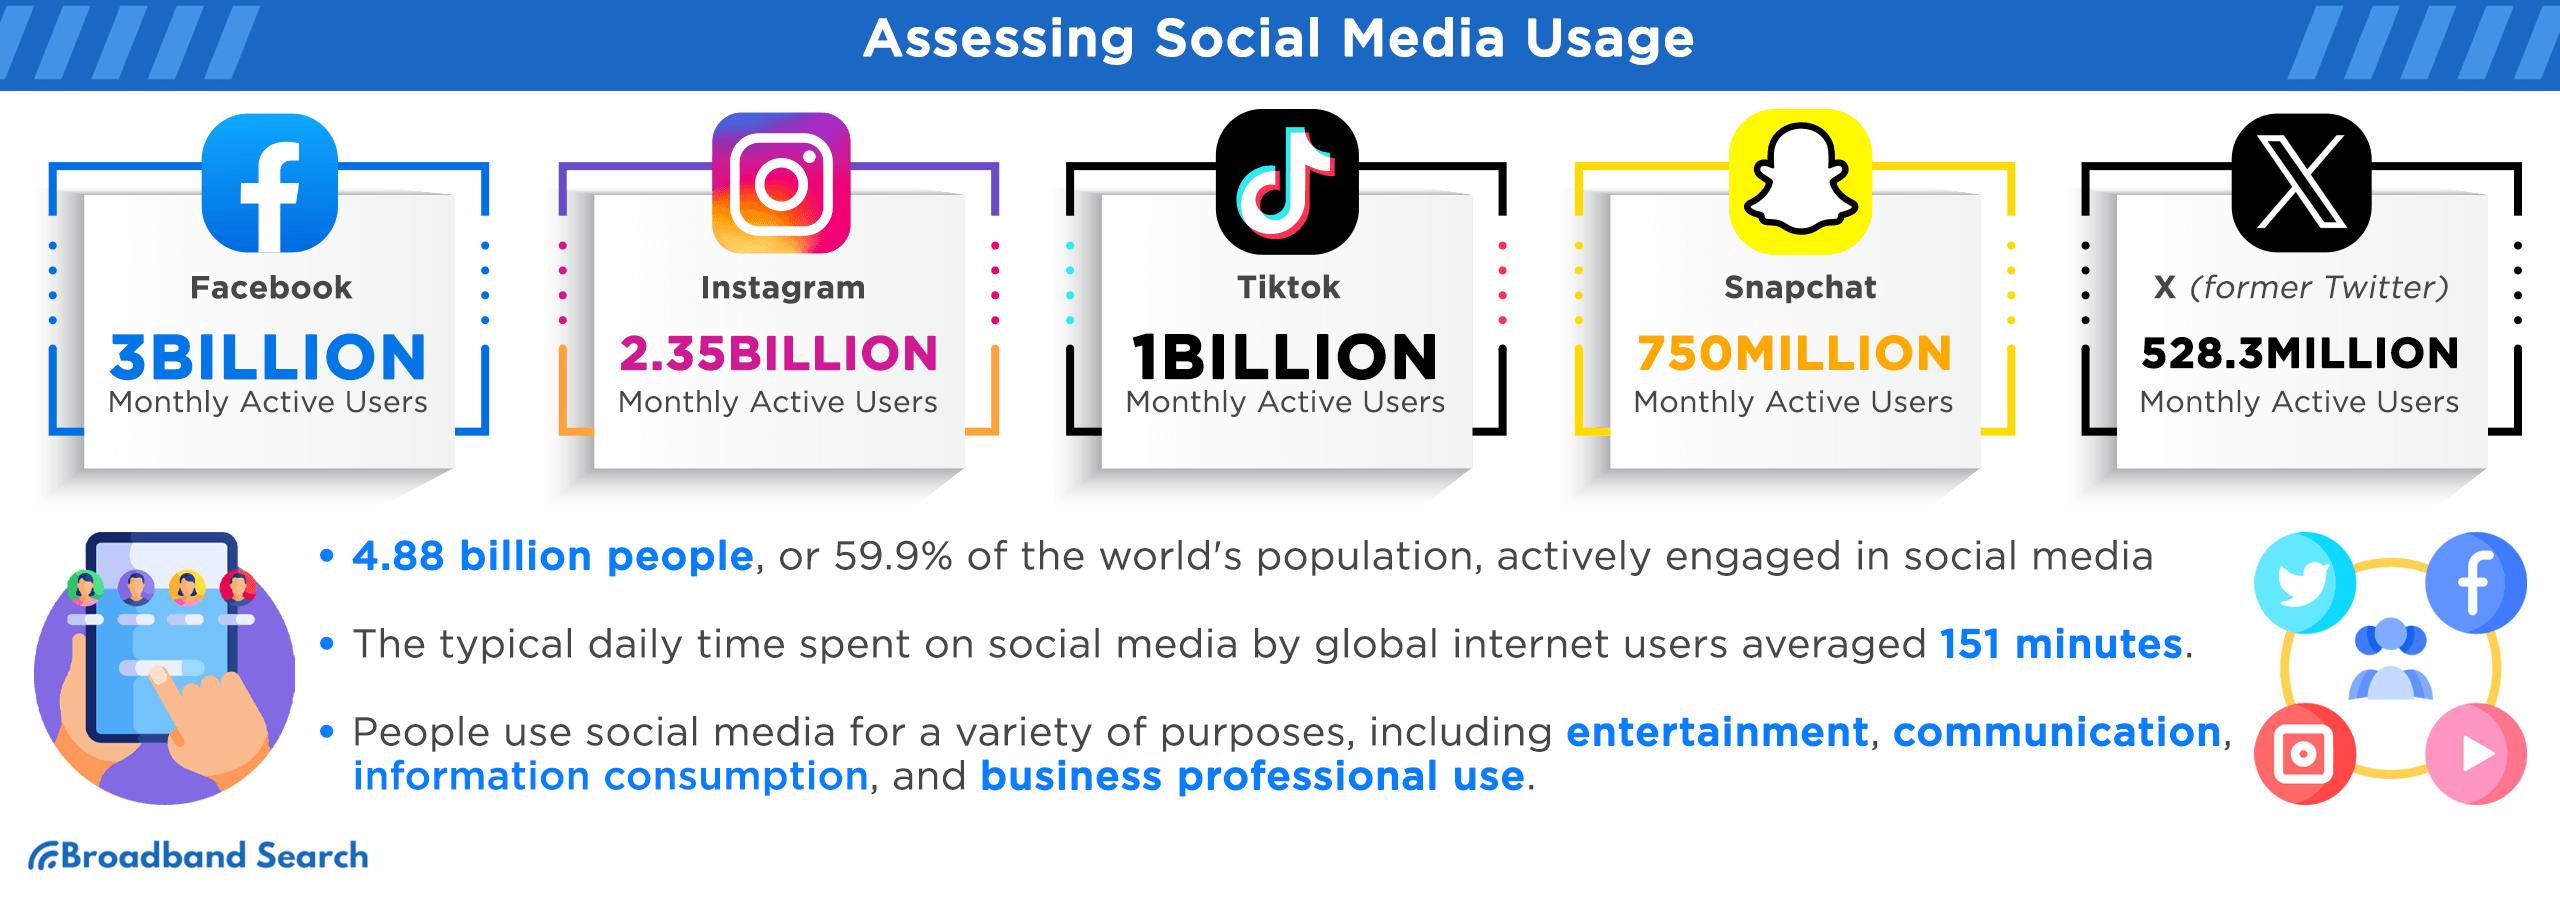 Assessing social media usage